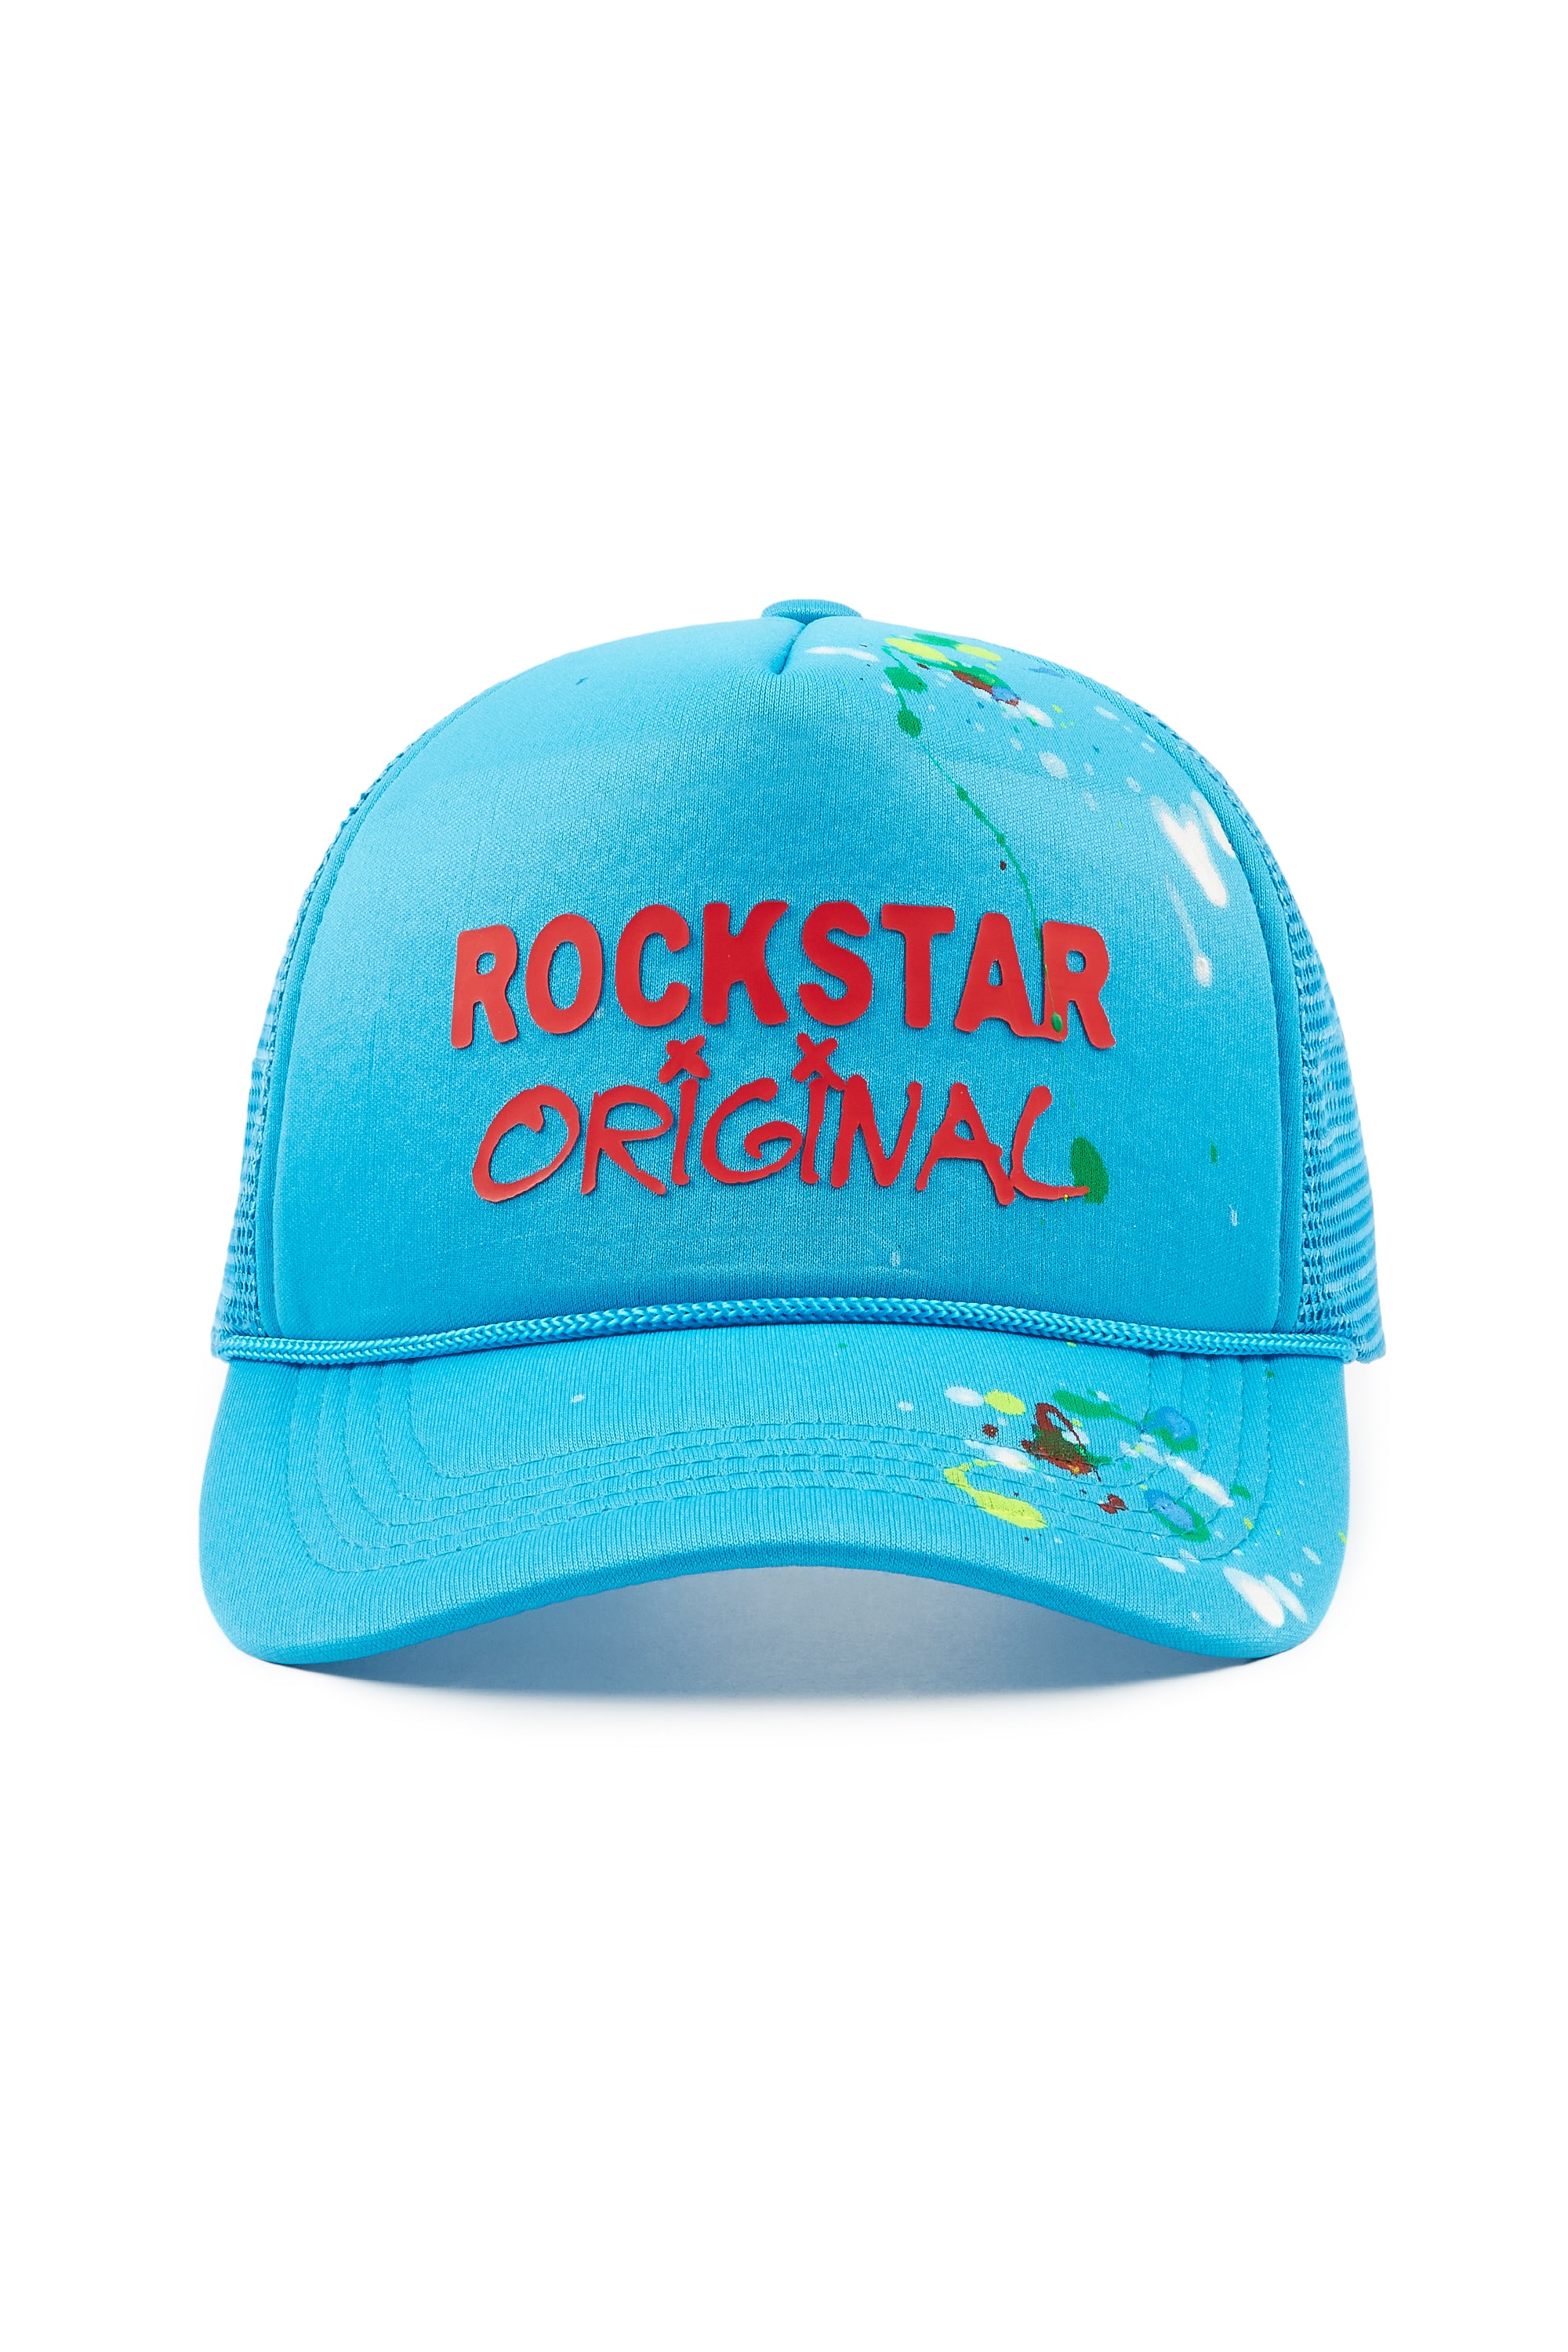 Zora Blue Trucker Hat